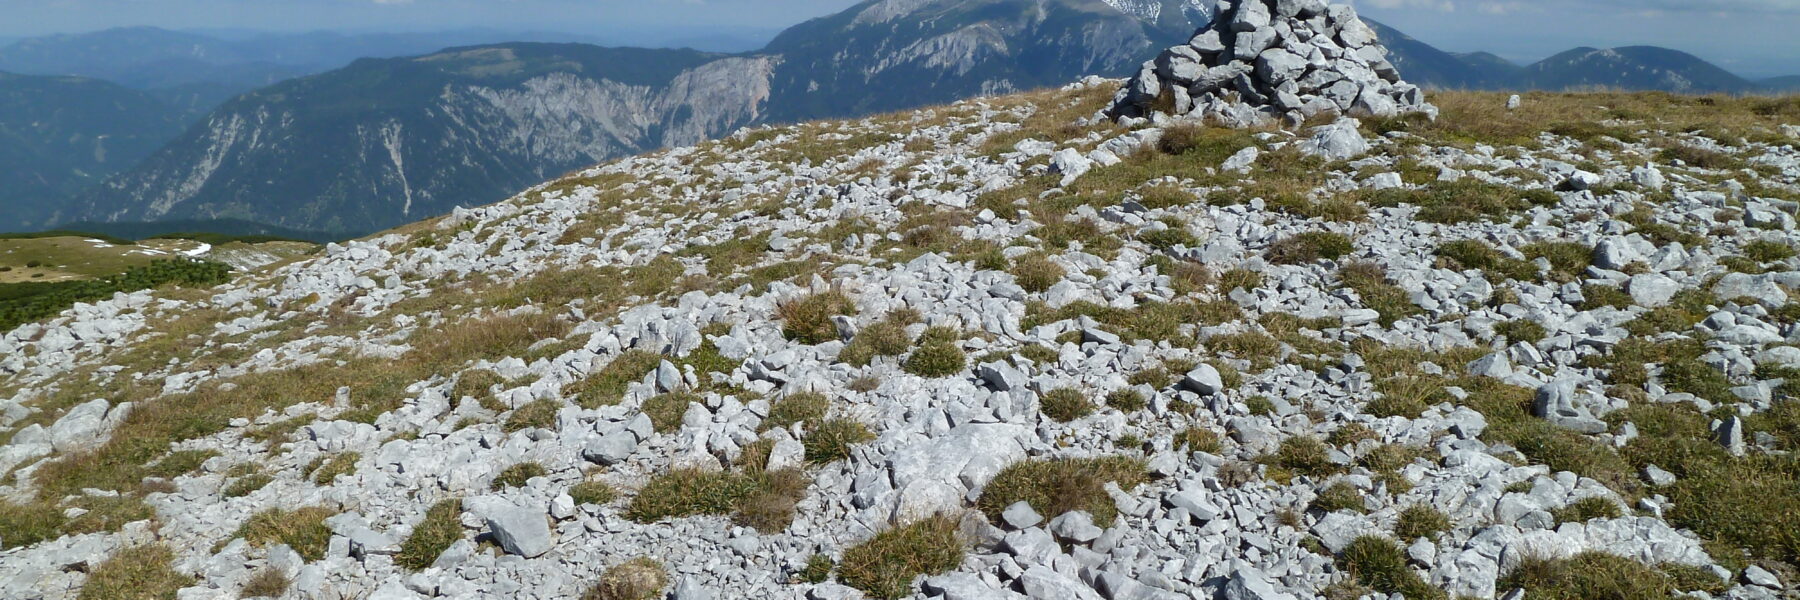 Auf der Scheibwaldhöhe, im Hintergrund der Schneeberg. Foto: Alpenverein Edelweiss